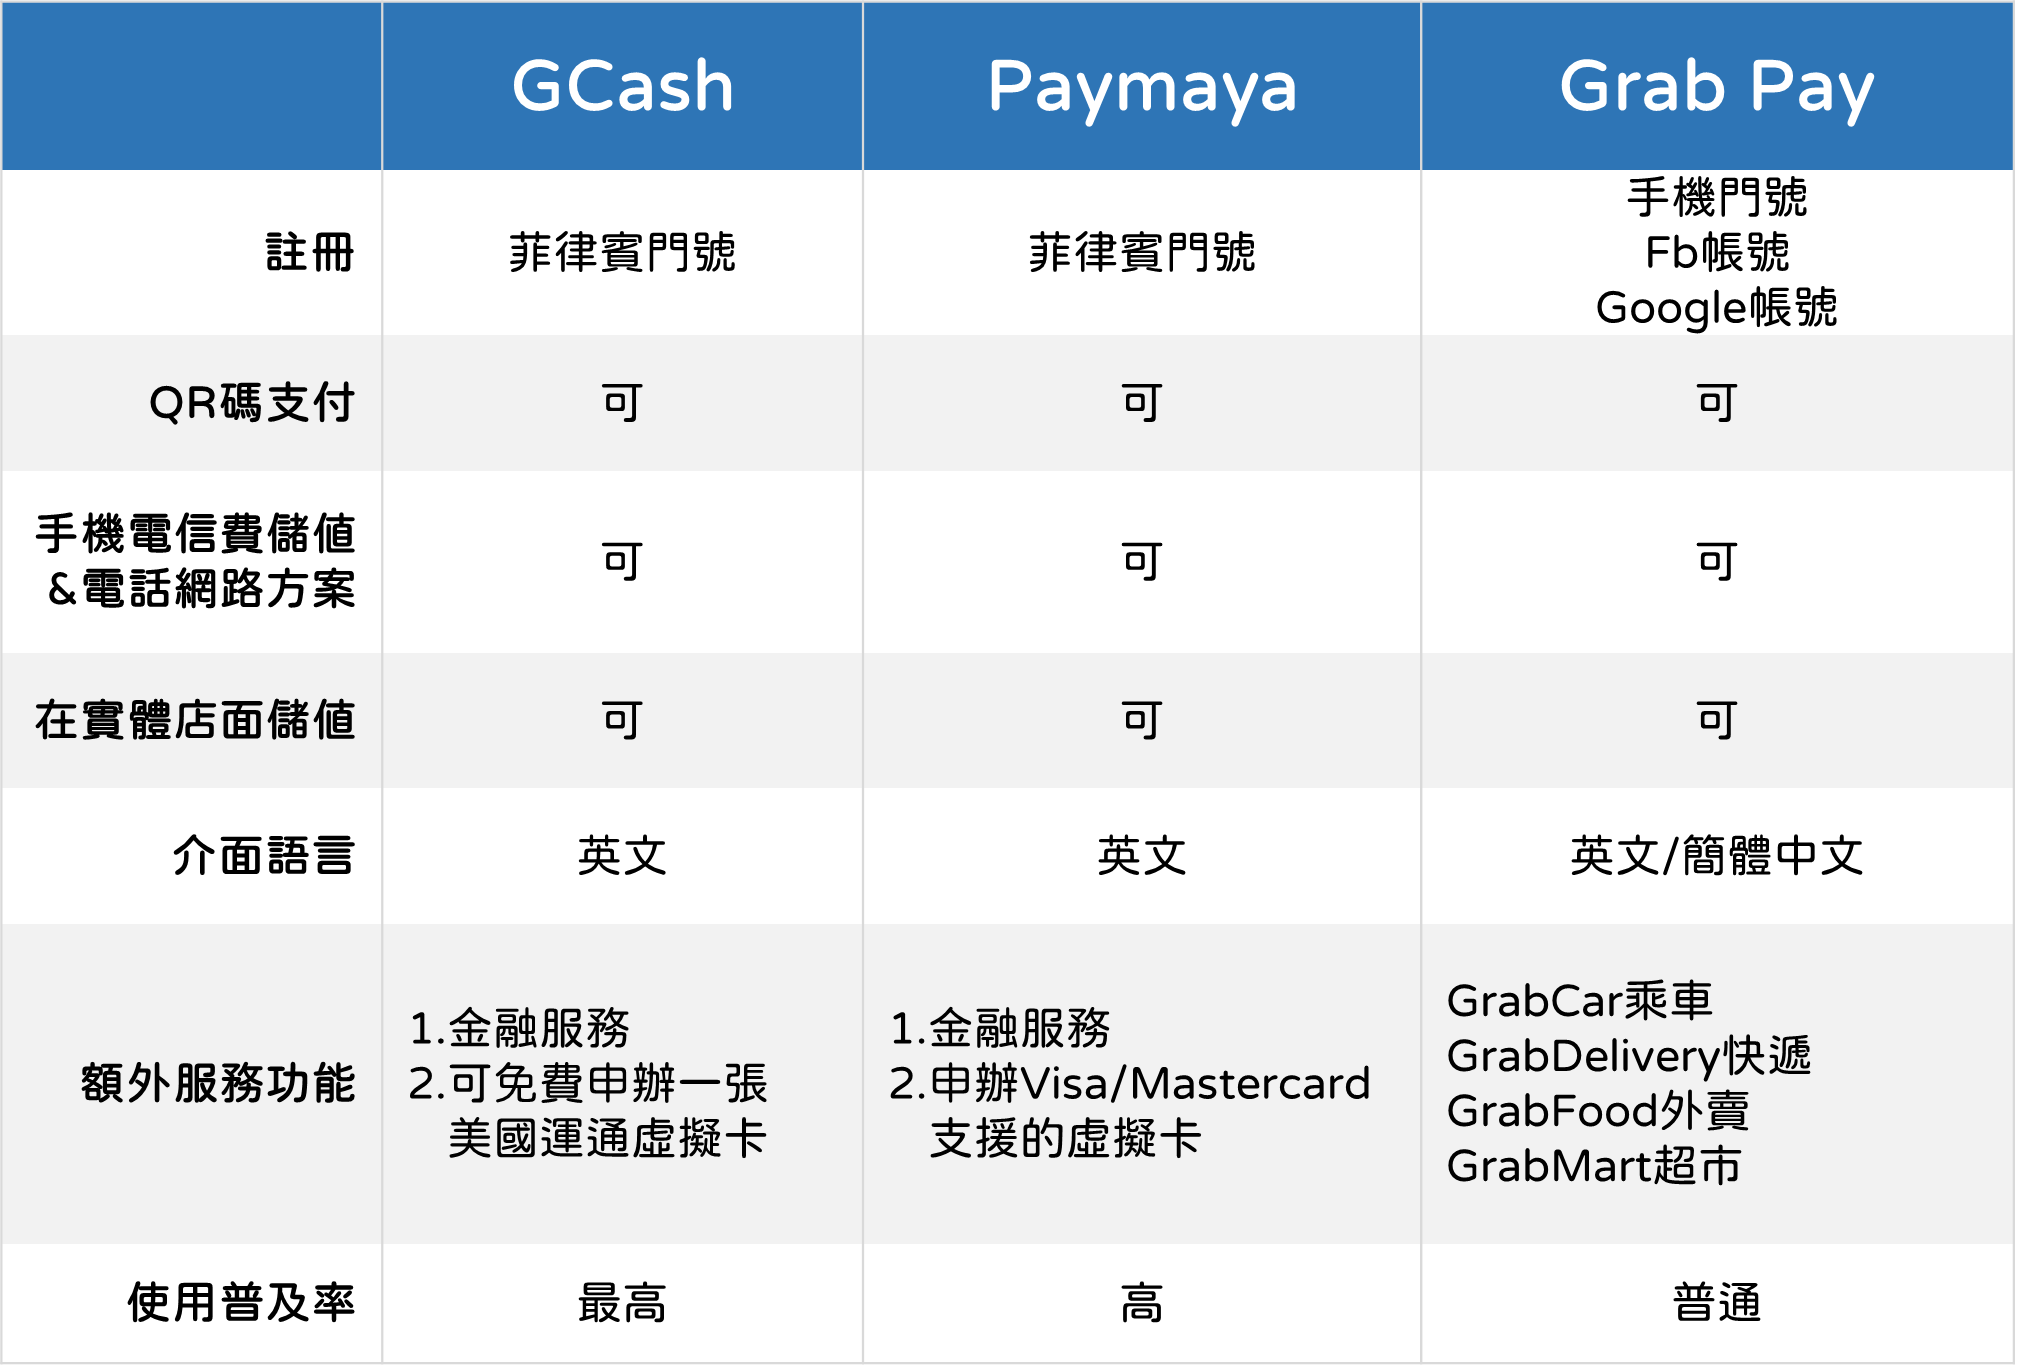 菲律賓三大電子支付系統比較表，GCash、Paymaya、GrabPay皆可使用QRcode進行支付，較為不同之處是僅有GrabPay可使用非手機門號註冊，而當地普及率最高的是GCash